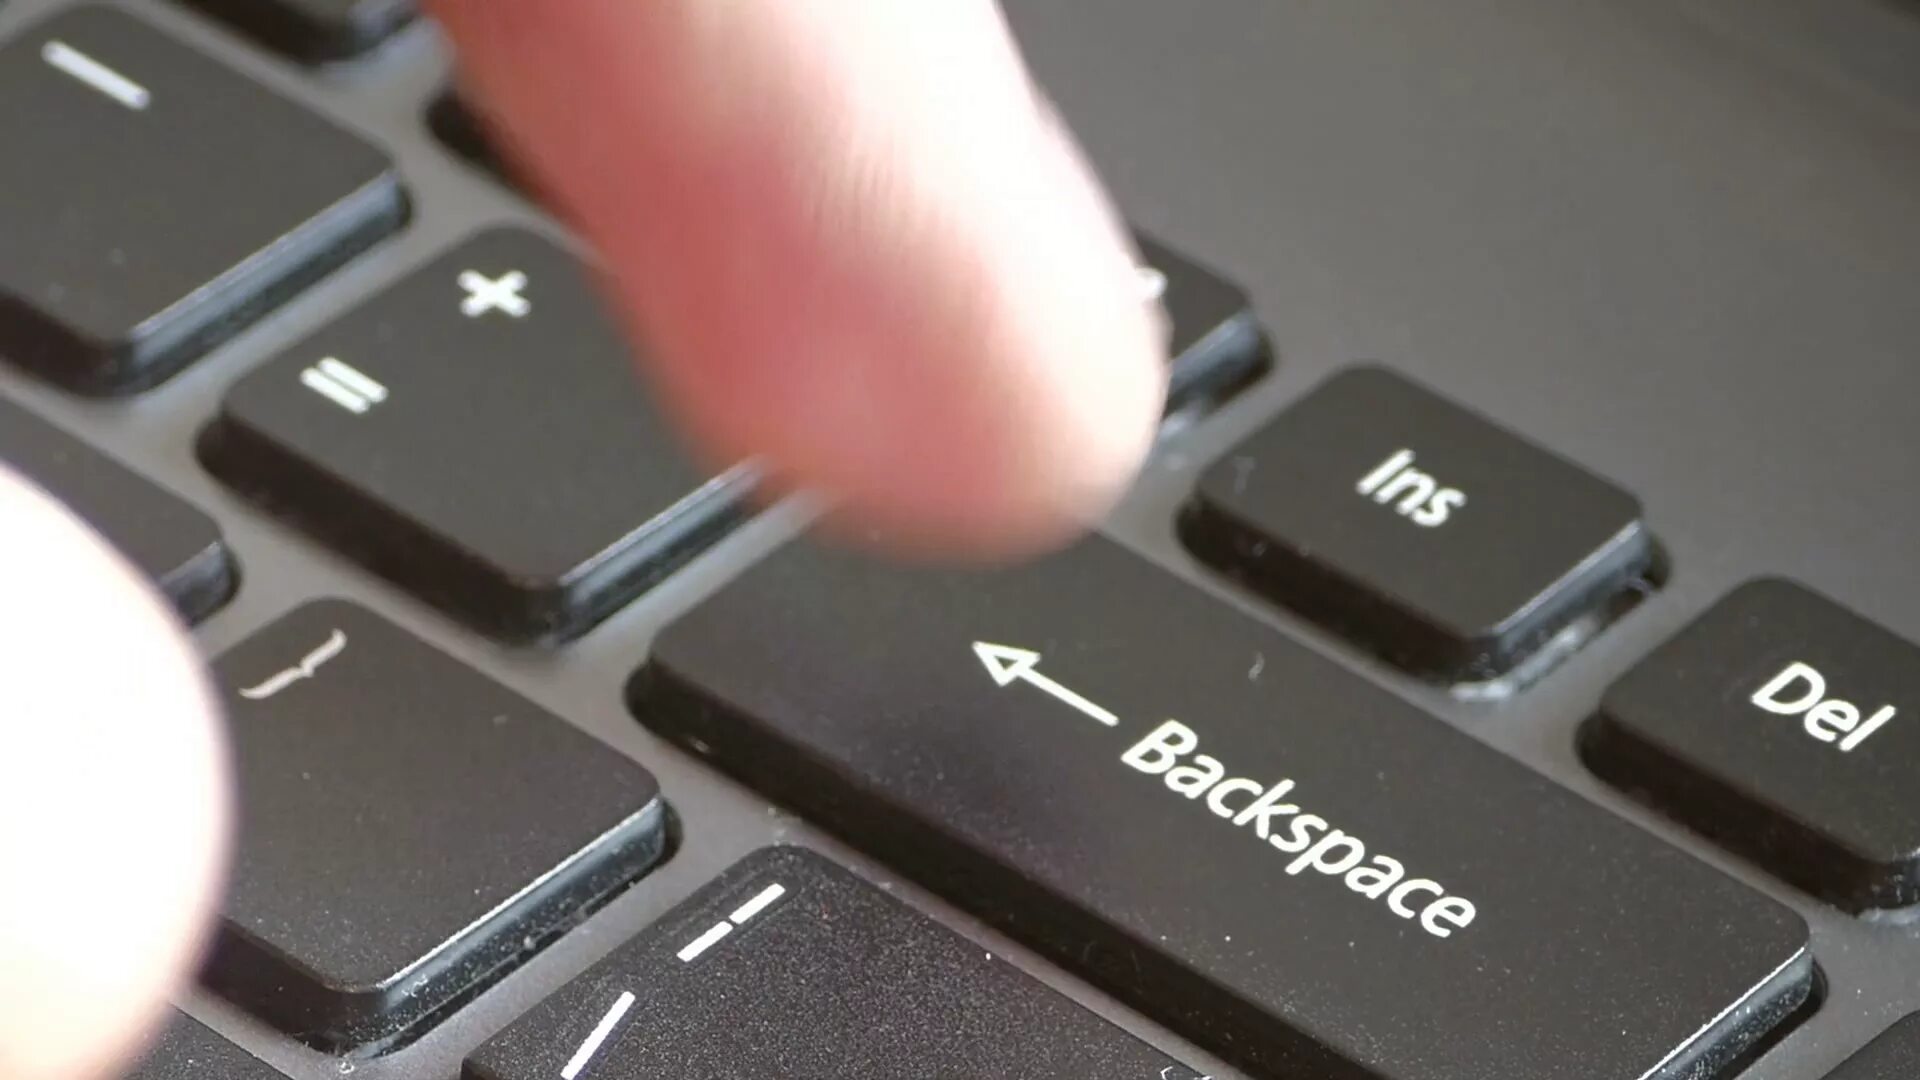 Нажать заставку. Кнопка Backspace на клавиатуре. Клавиша Backspace delete на клавиатуре. Клавиша бжкспэйс. Бакспейс клавиатура.